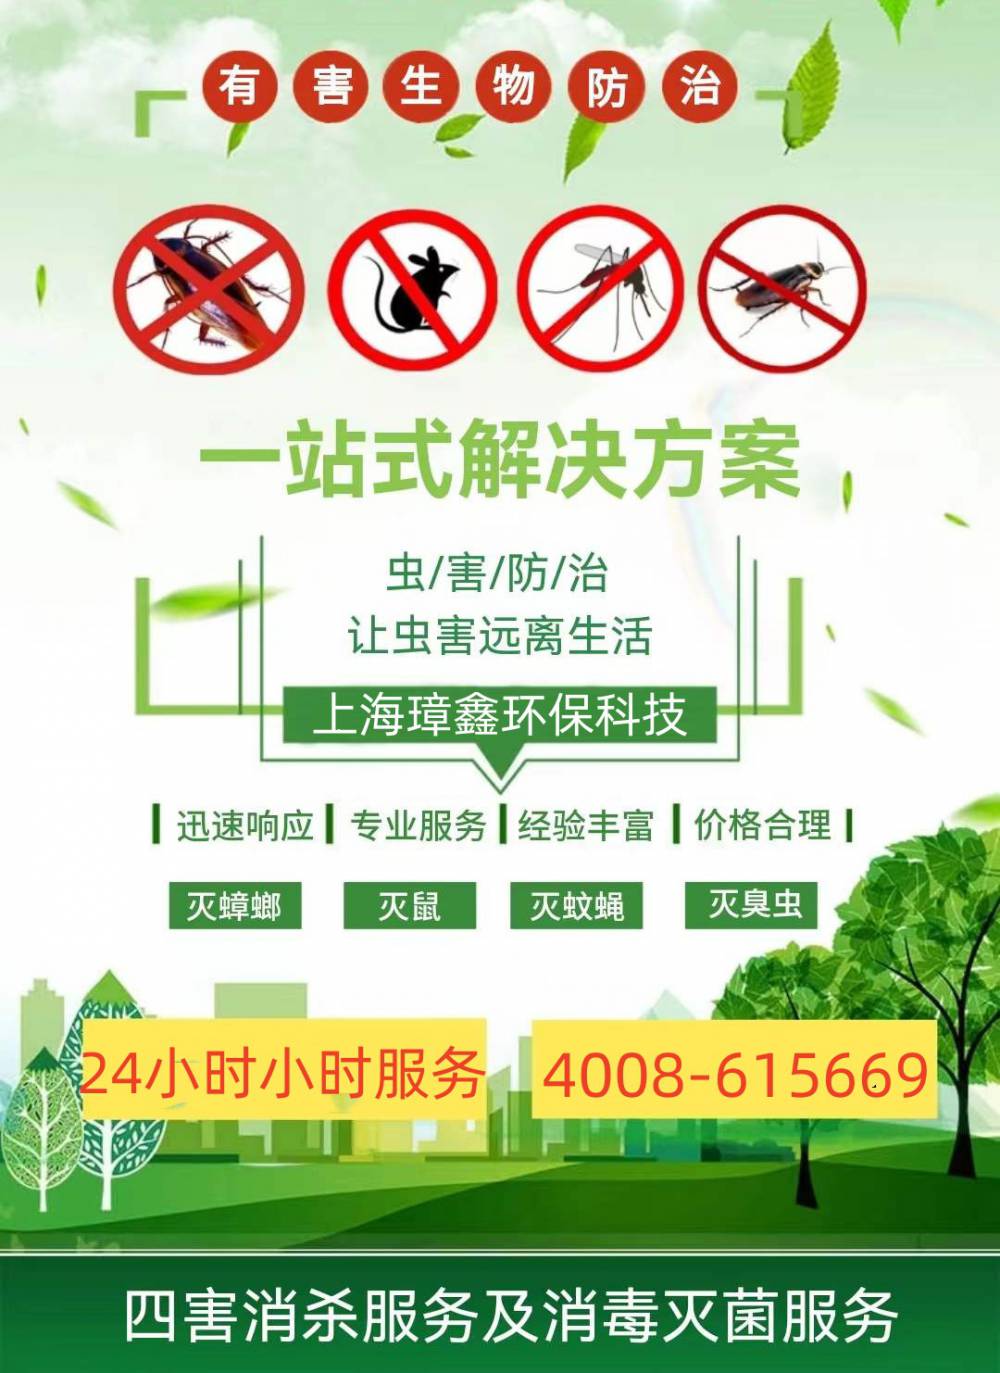 上海市**灭鼠公司除蟑螂灭蟑螂24小时上门服务